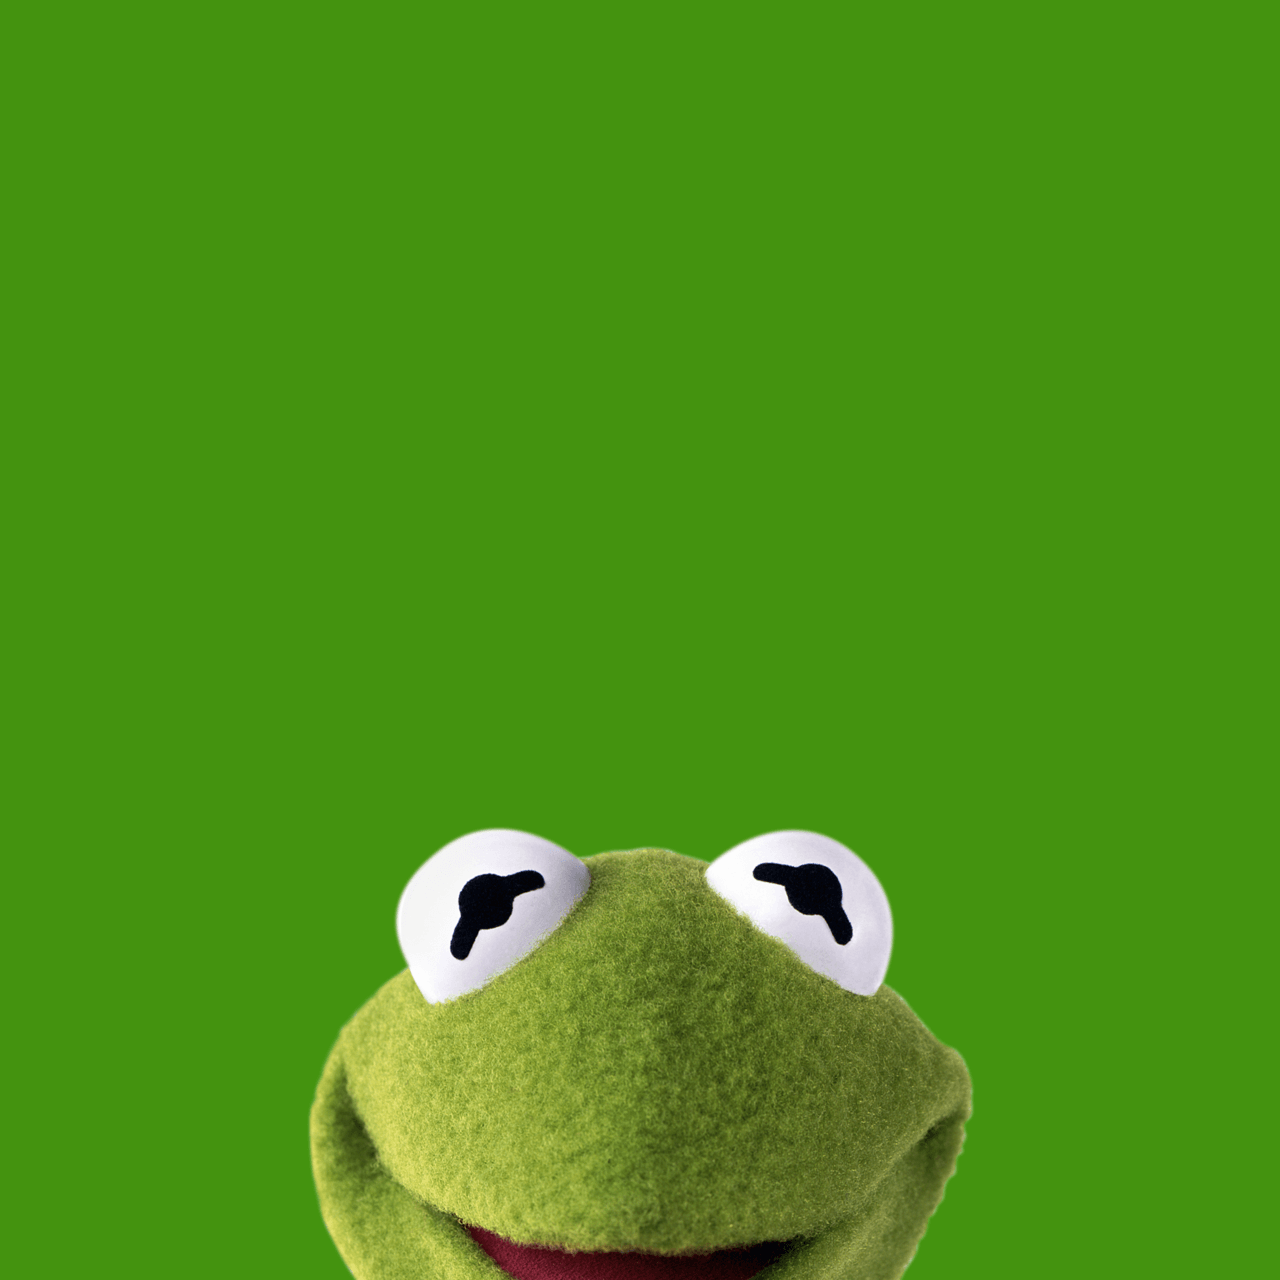 Kermit the Frog iPhone Wallpaper